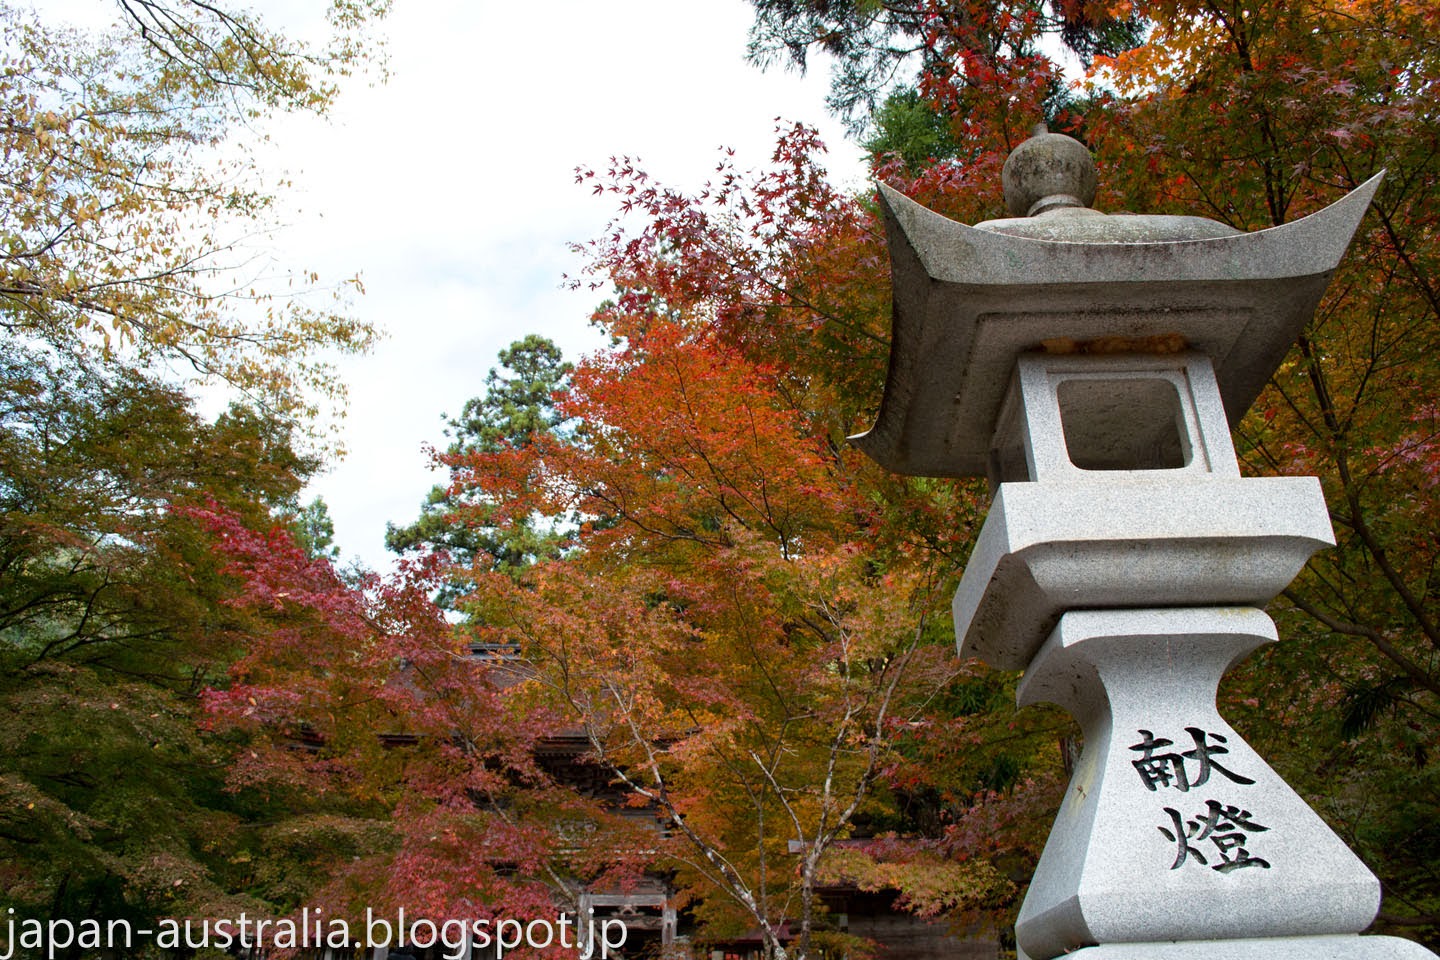 The Japanese Garden Of Koishikawa Korakuen Autumn Colors In